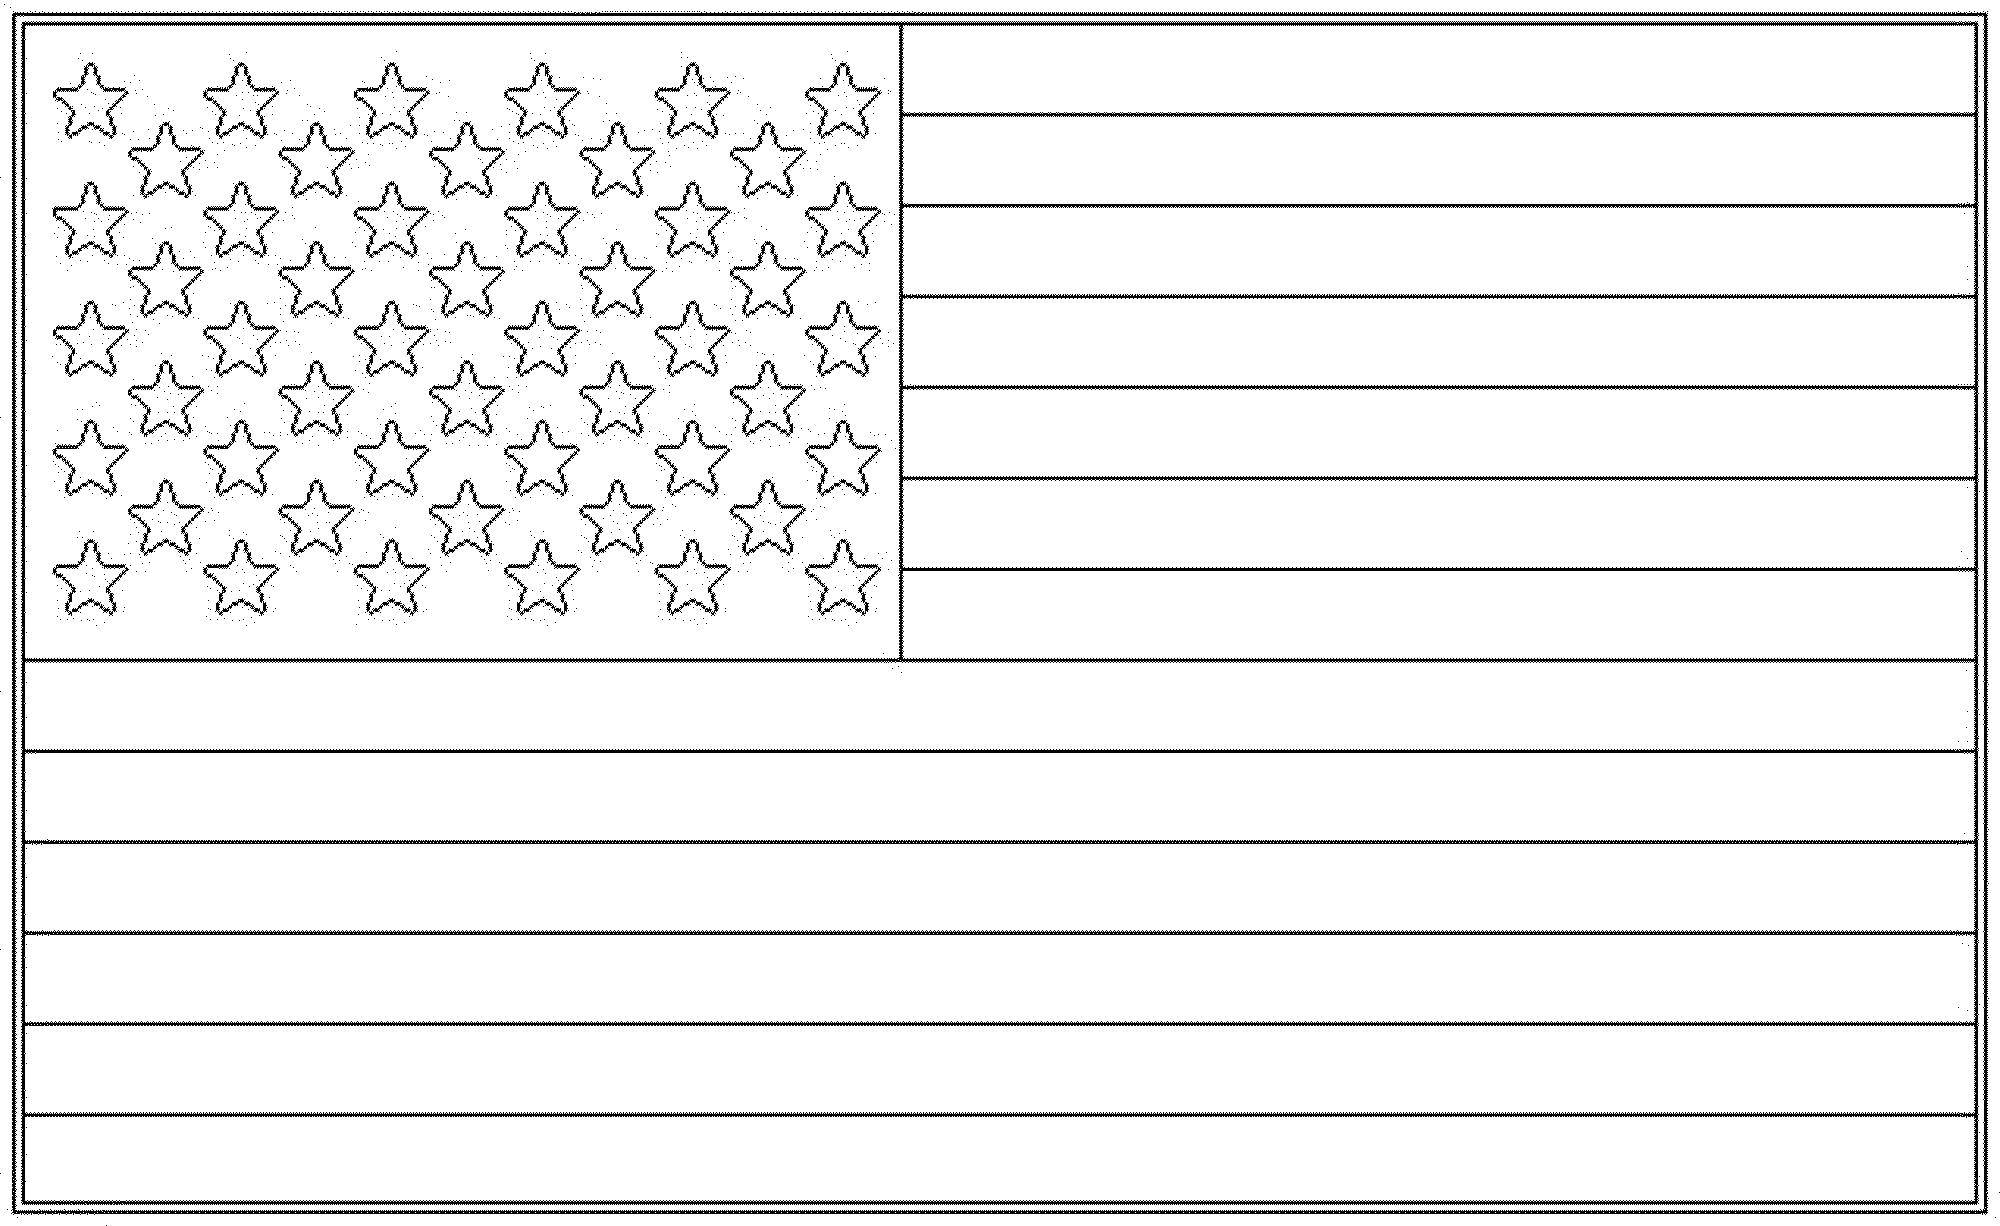 Coloring USA flag. Category USA . Tags:  flag, USA, America.